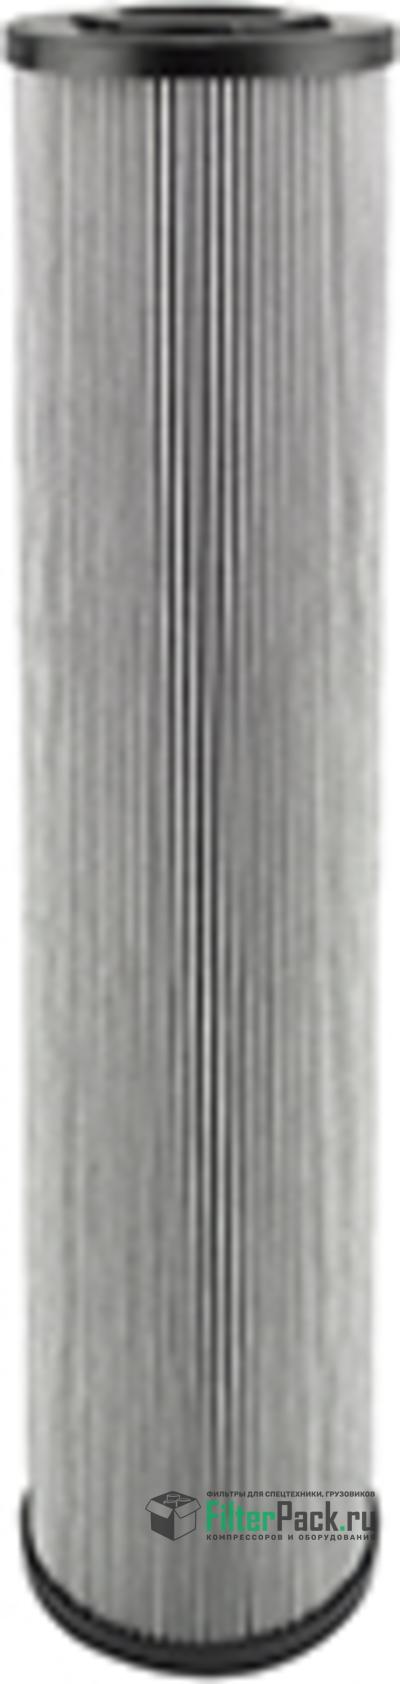 Baldwin PT9488-MPG гидравлический фильтр элемент